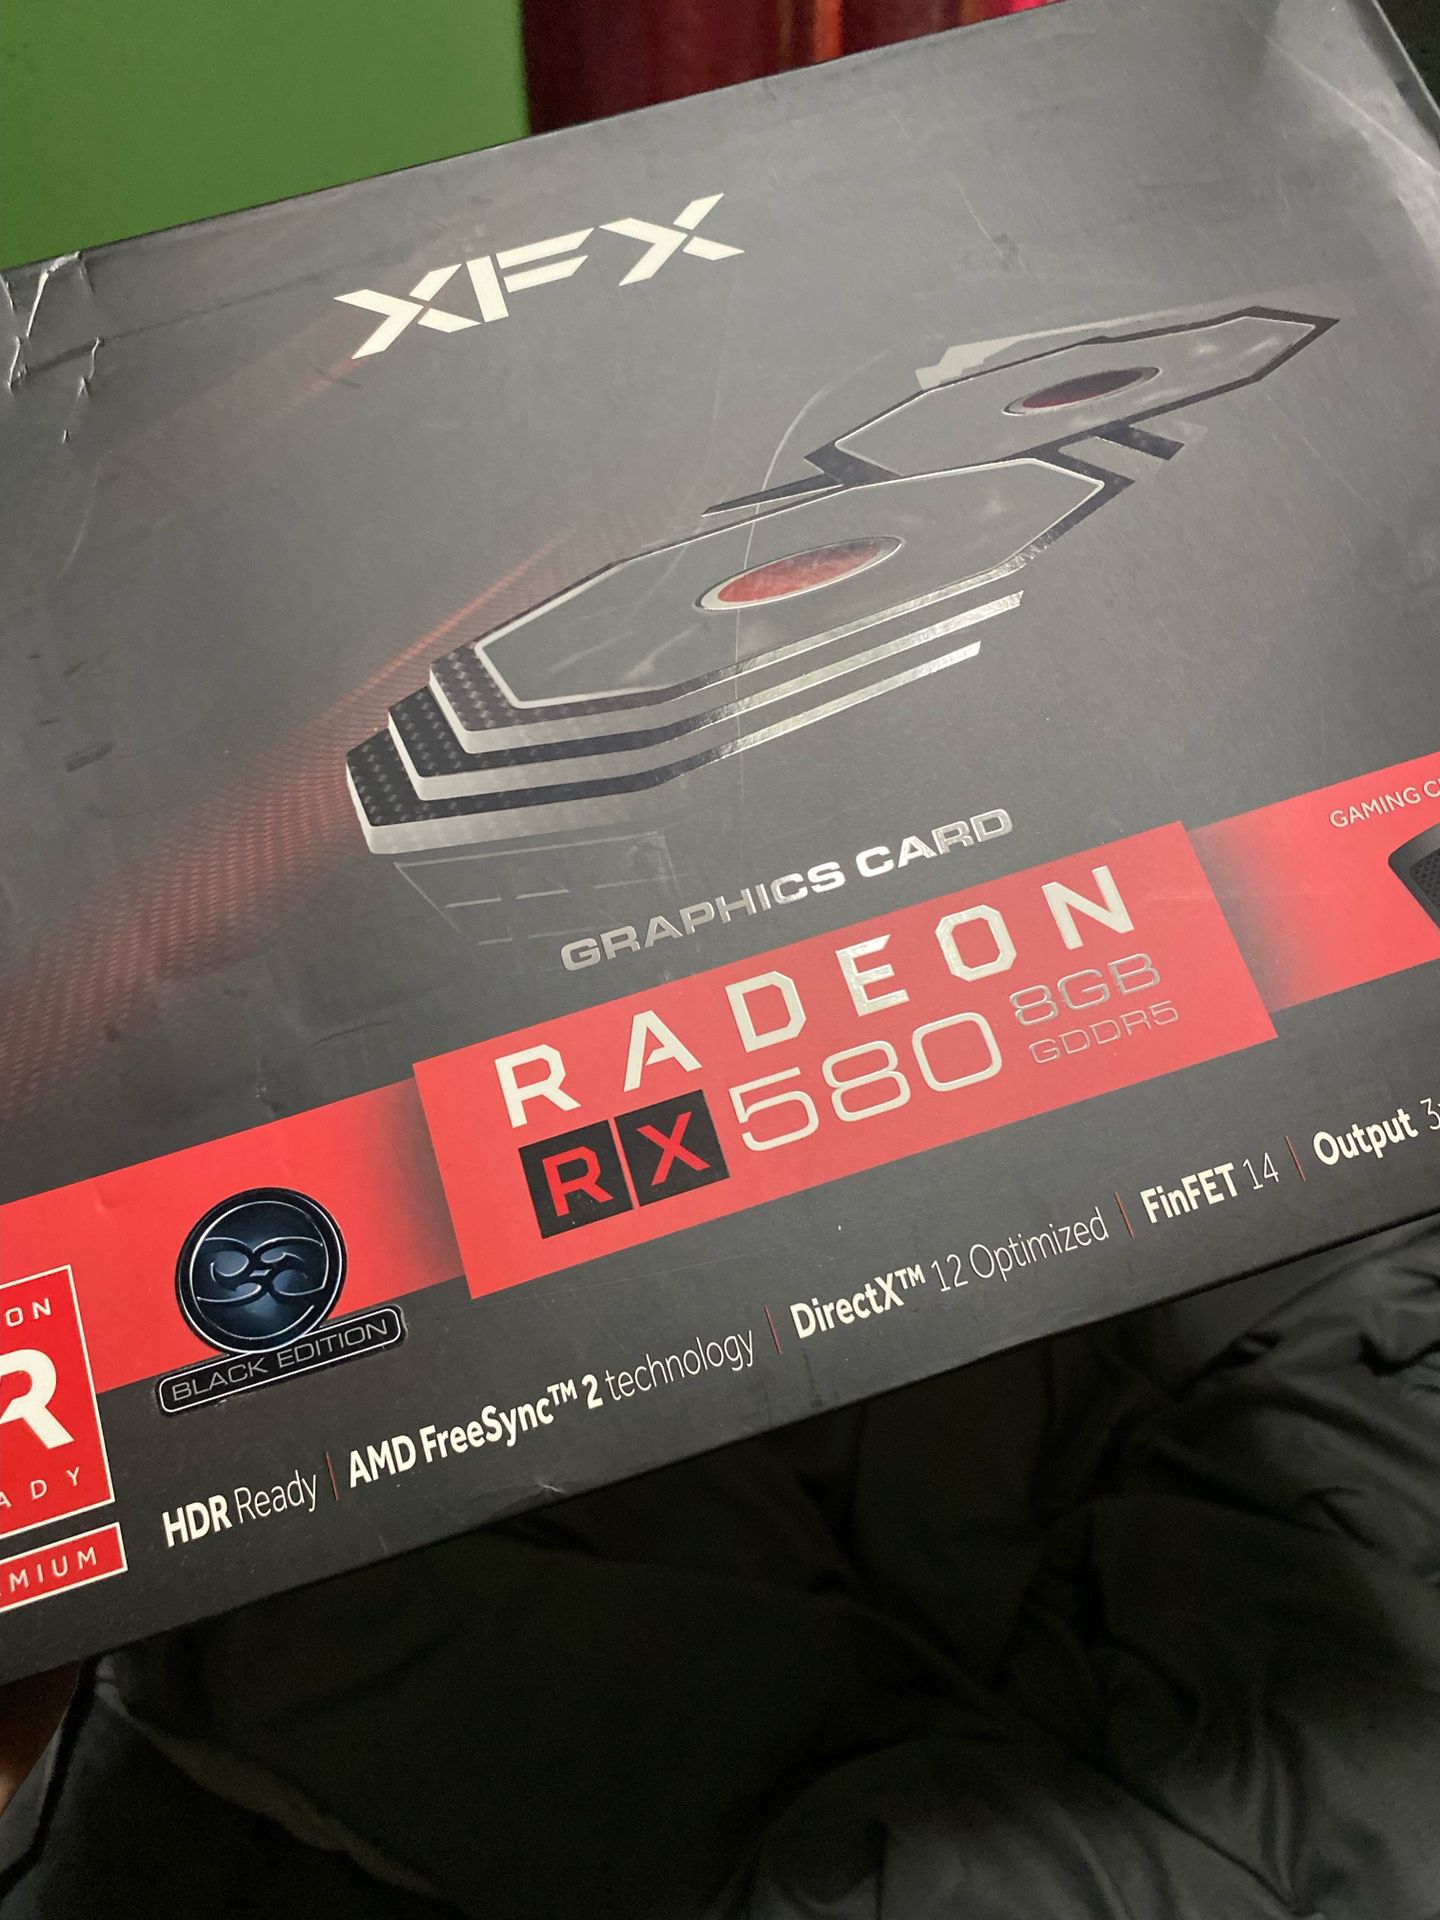 Radeon Rx 580 GPU